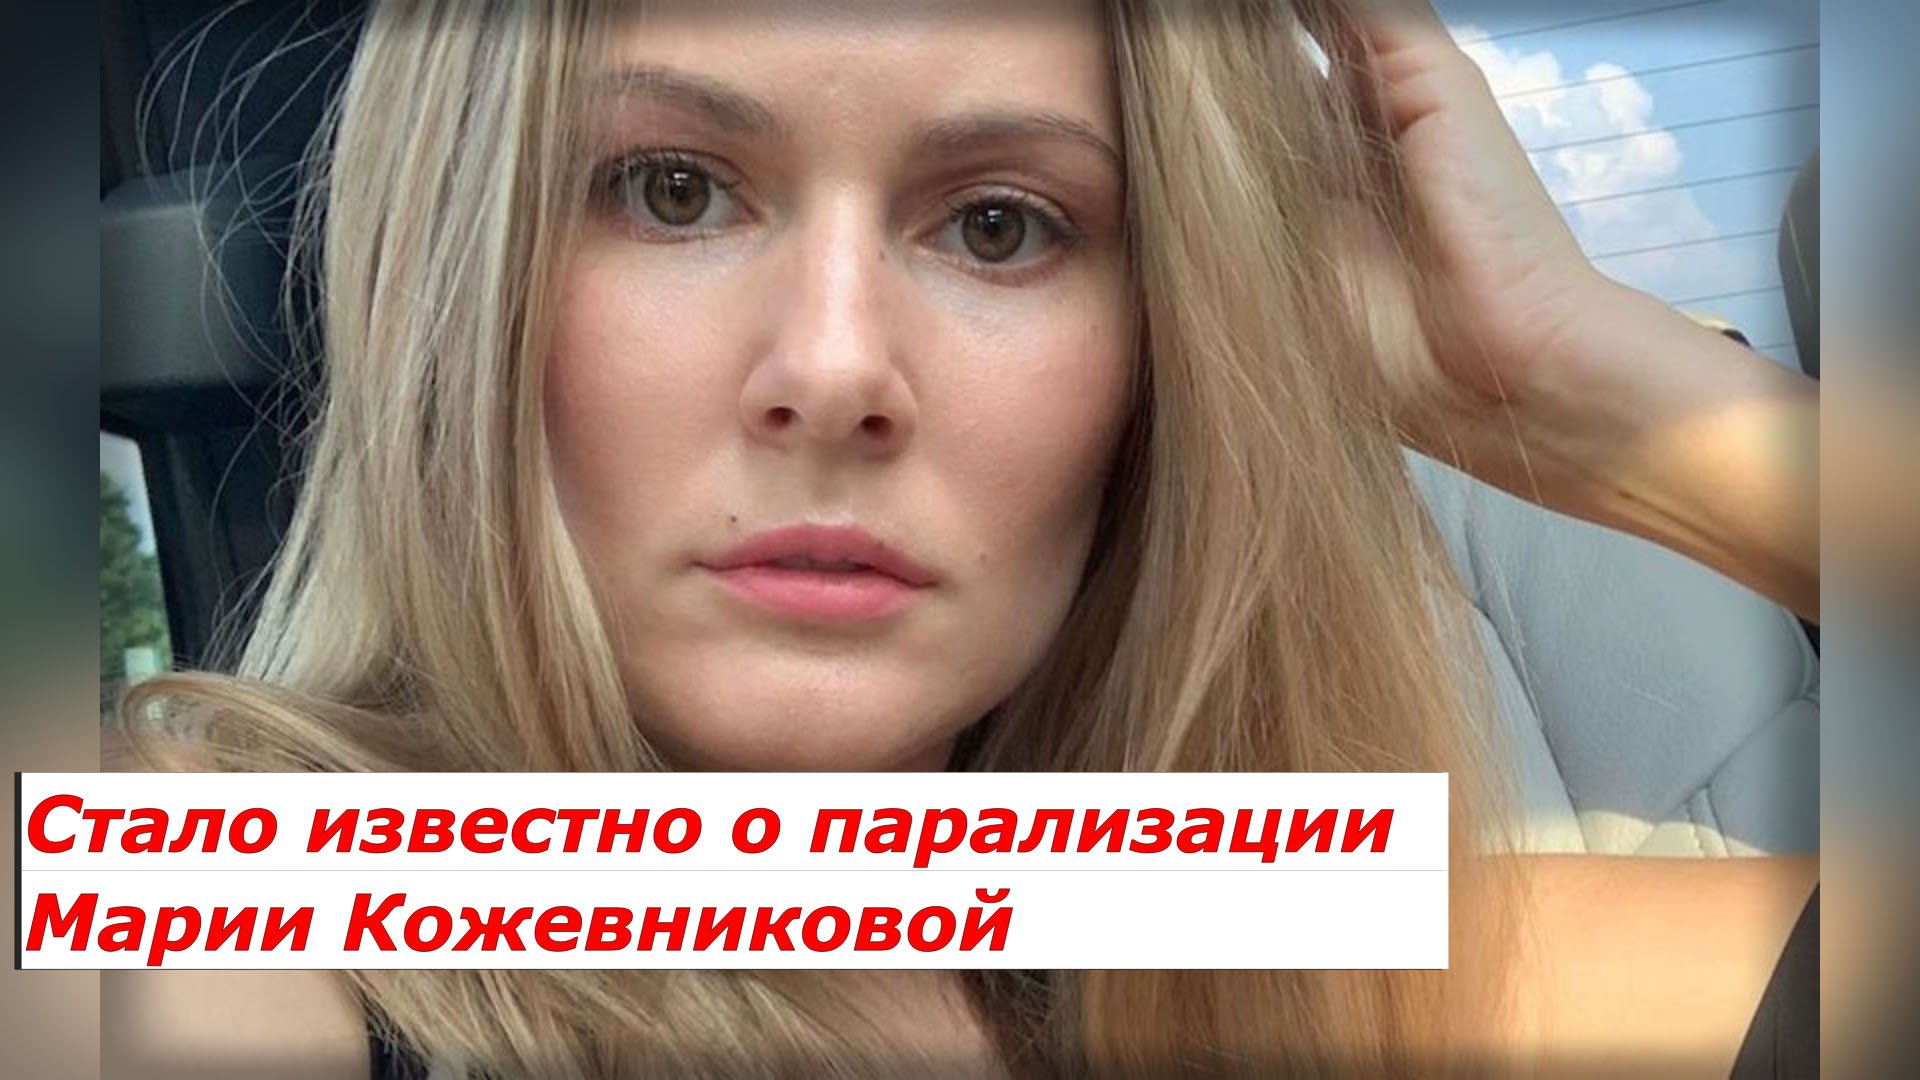 Мария Кожевникова грудь 2020